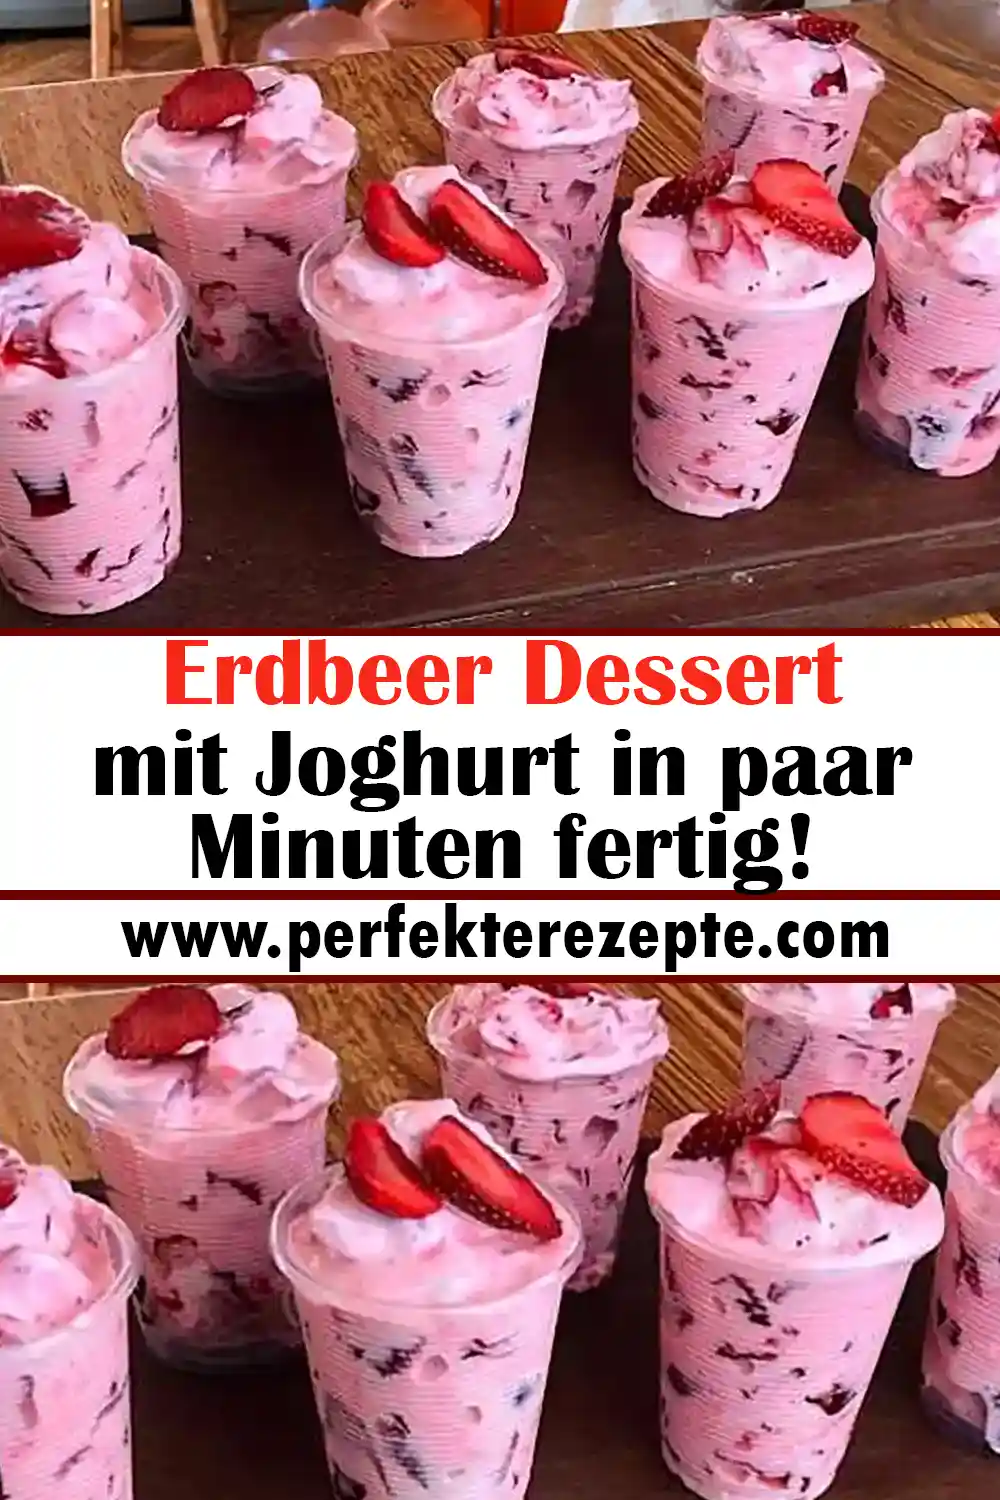 Erdbeer Dessert mit Joghurt Rezept in paar Minuten fertig!